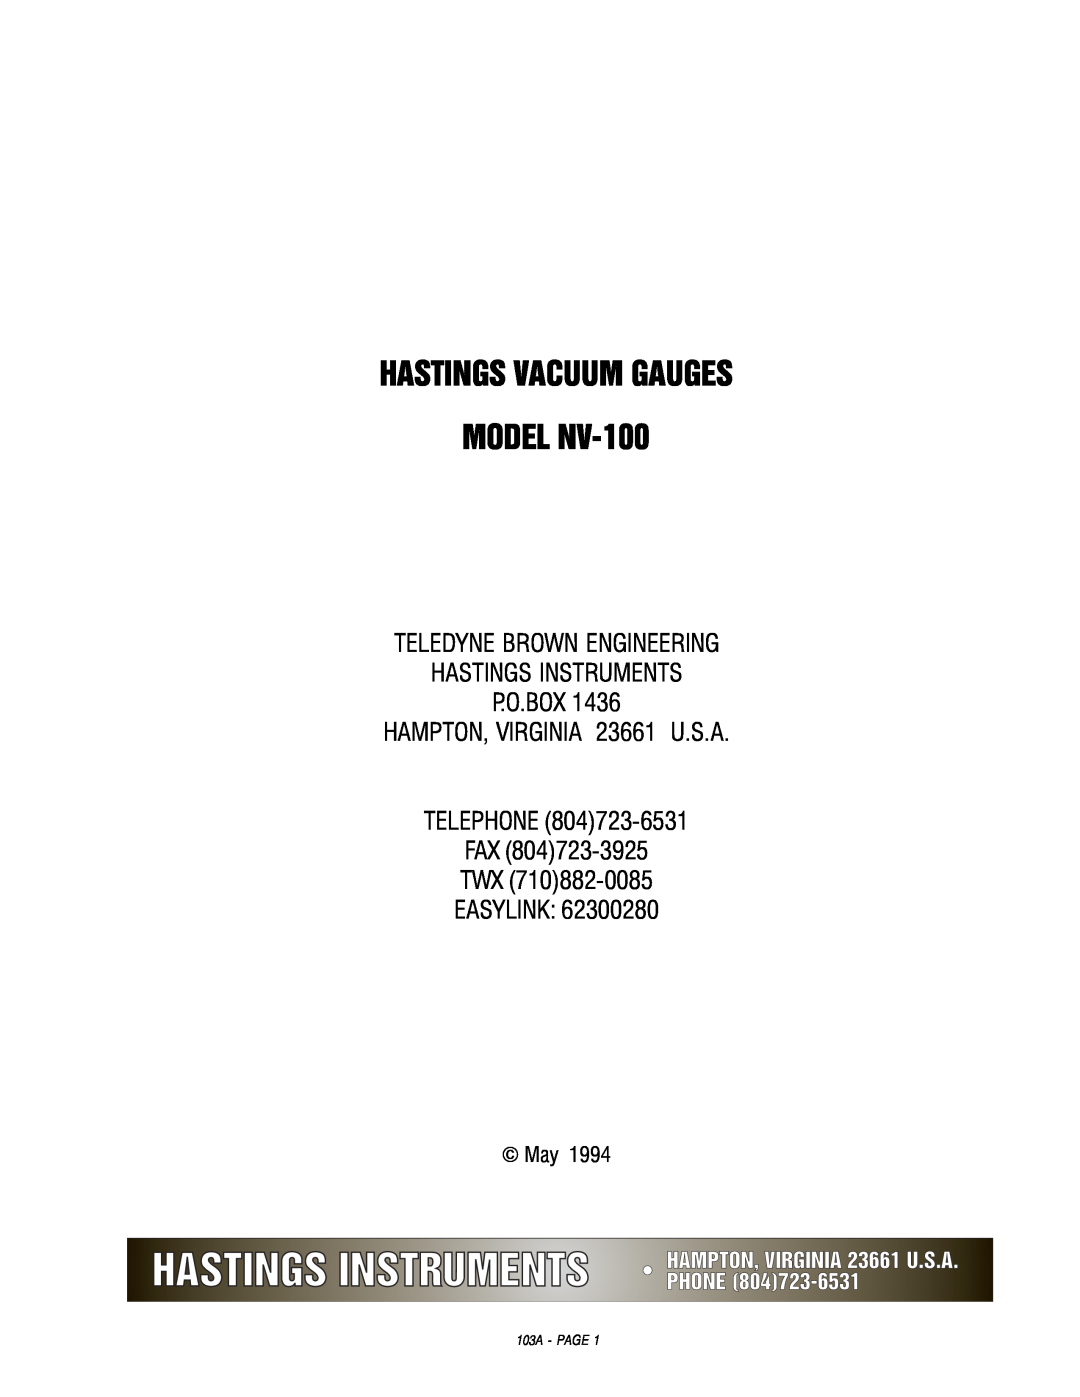 Teledyne manual Hastings Vacuum Gauges, MODEL NV-100, Teledyne Brown Engineering Hastings Instruments, Fax Twx Easylink 